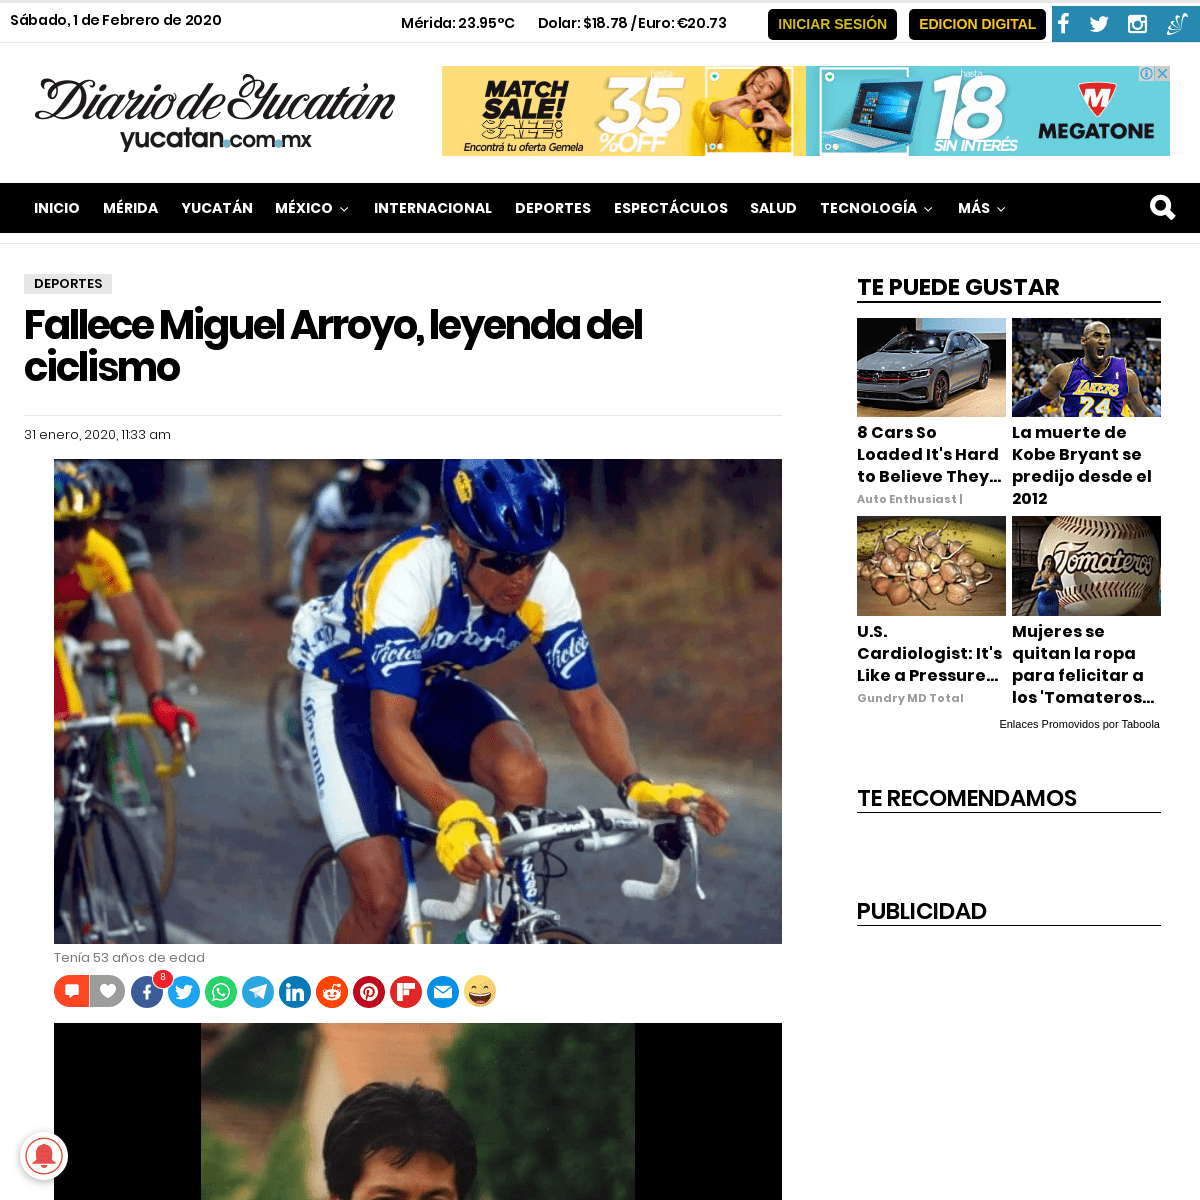 A complete backup of www.yucatan.com.mx/deportes/fallece-miguel-arroyo-leyenda-del-ciclismo